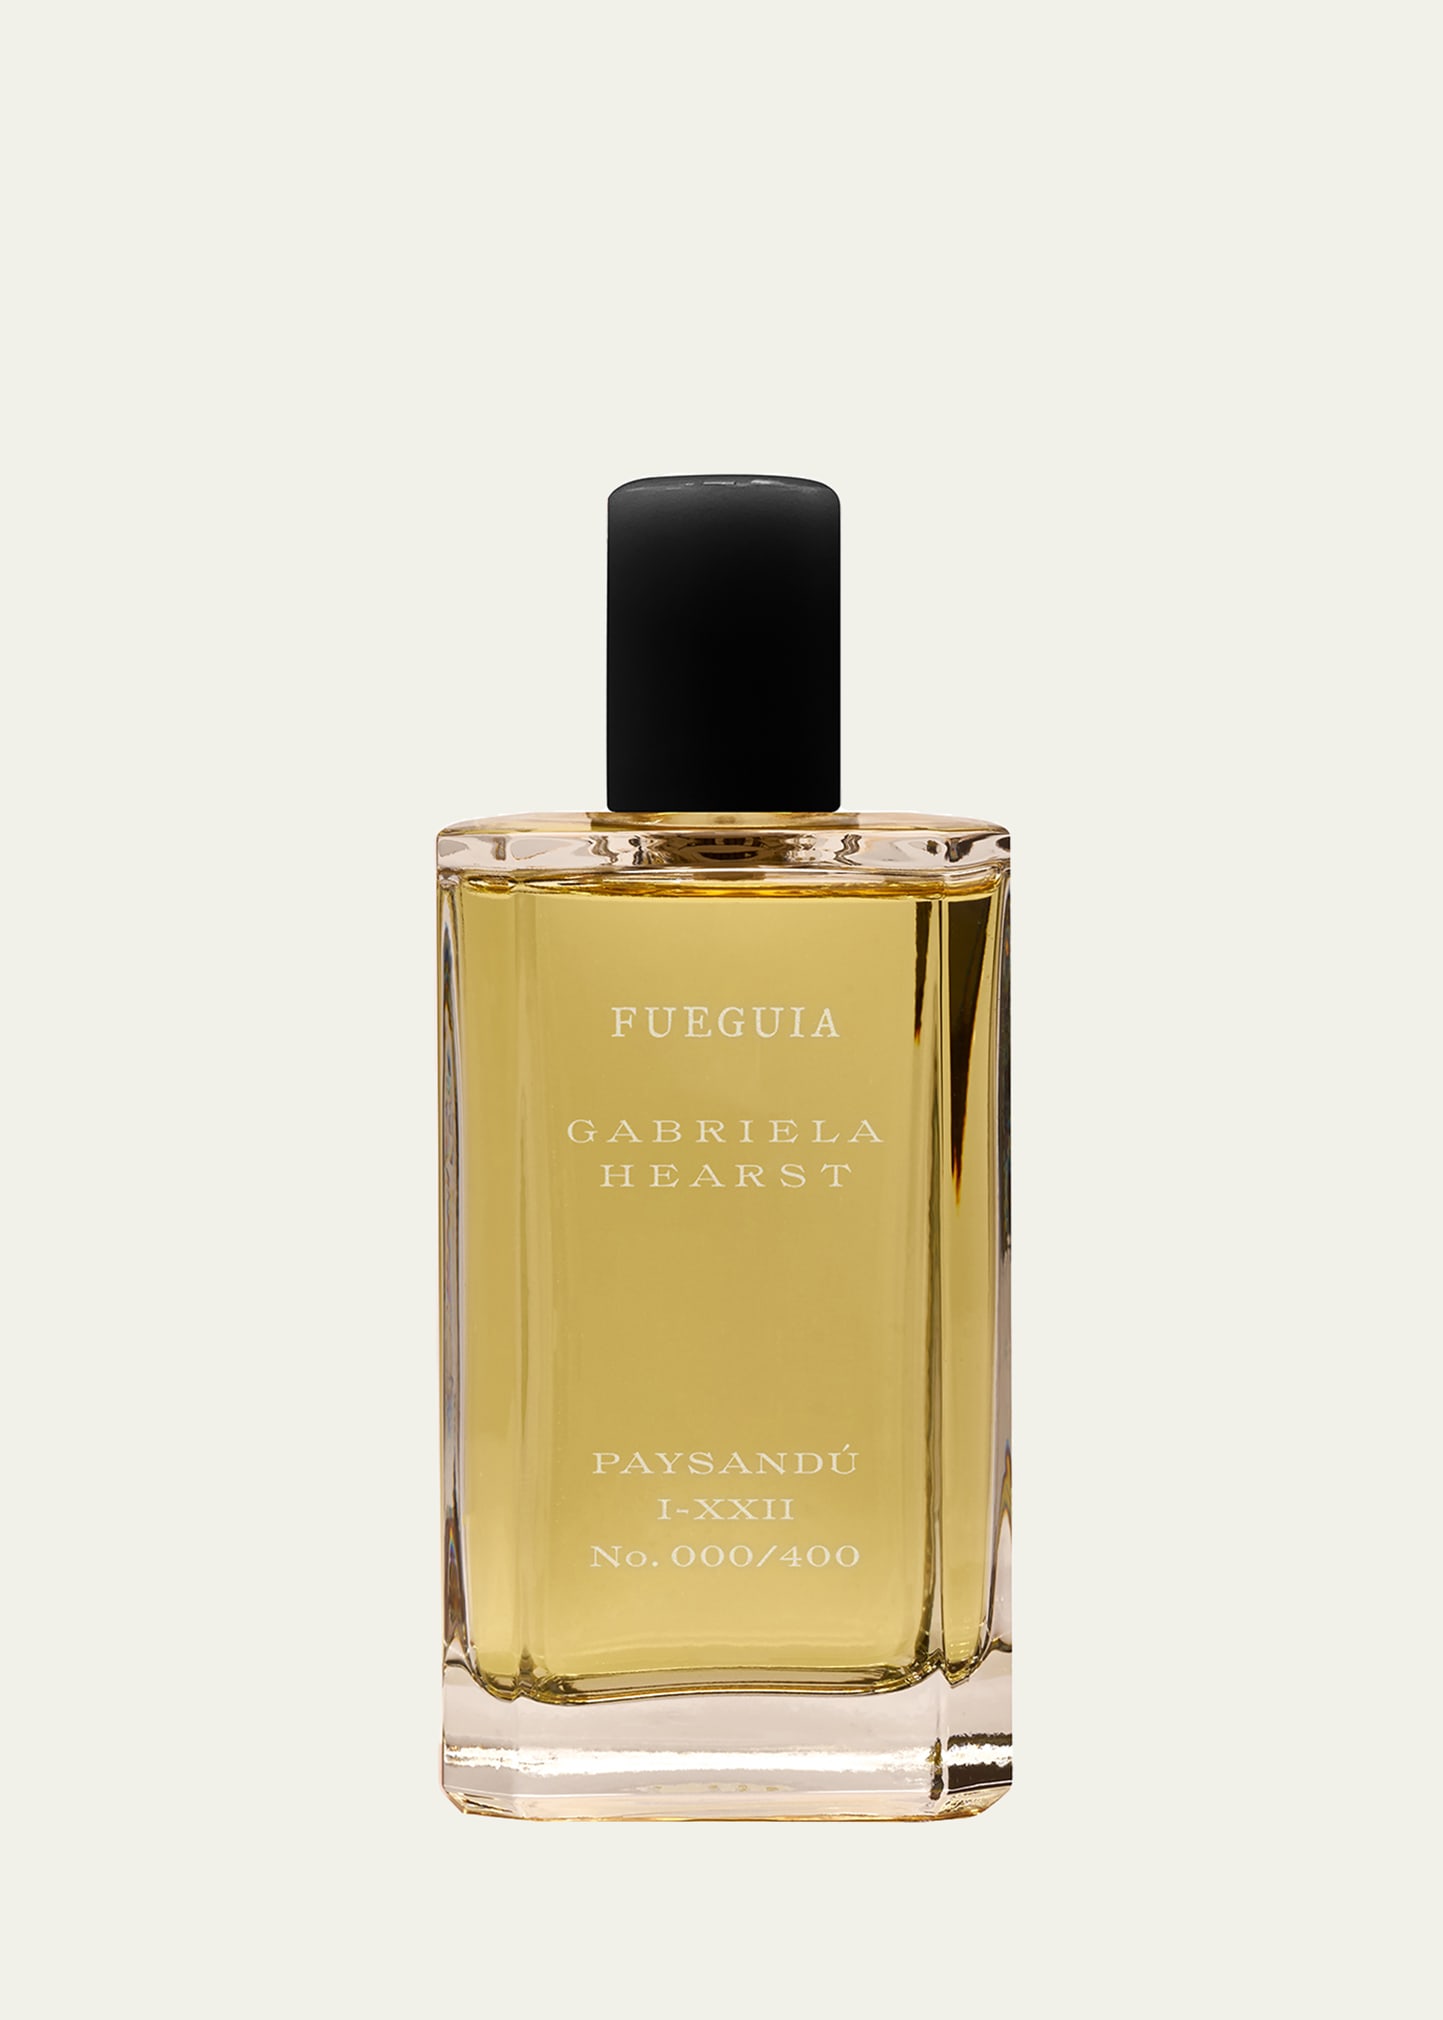 FUEGUIA 1833 Paysandu Eau de Parfum, 3.4 oz. | Bergdorf Goodman